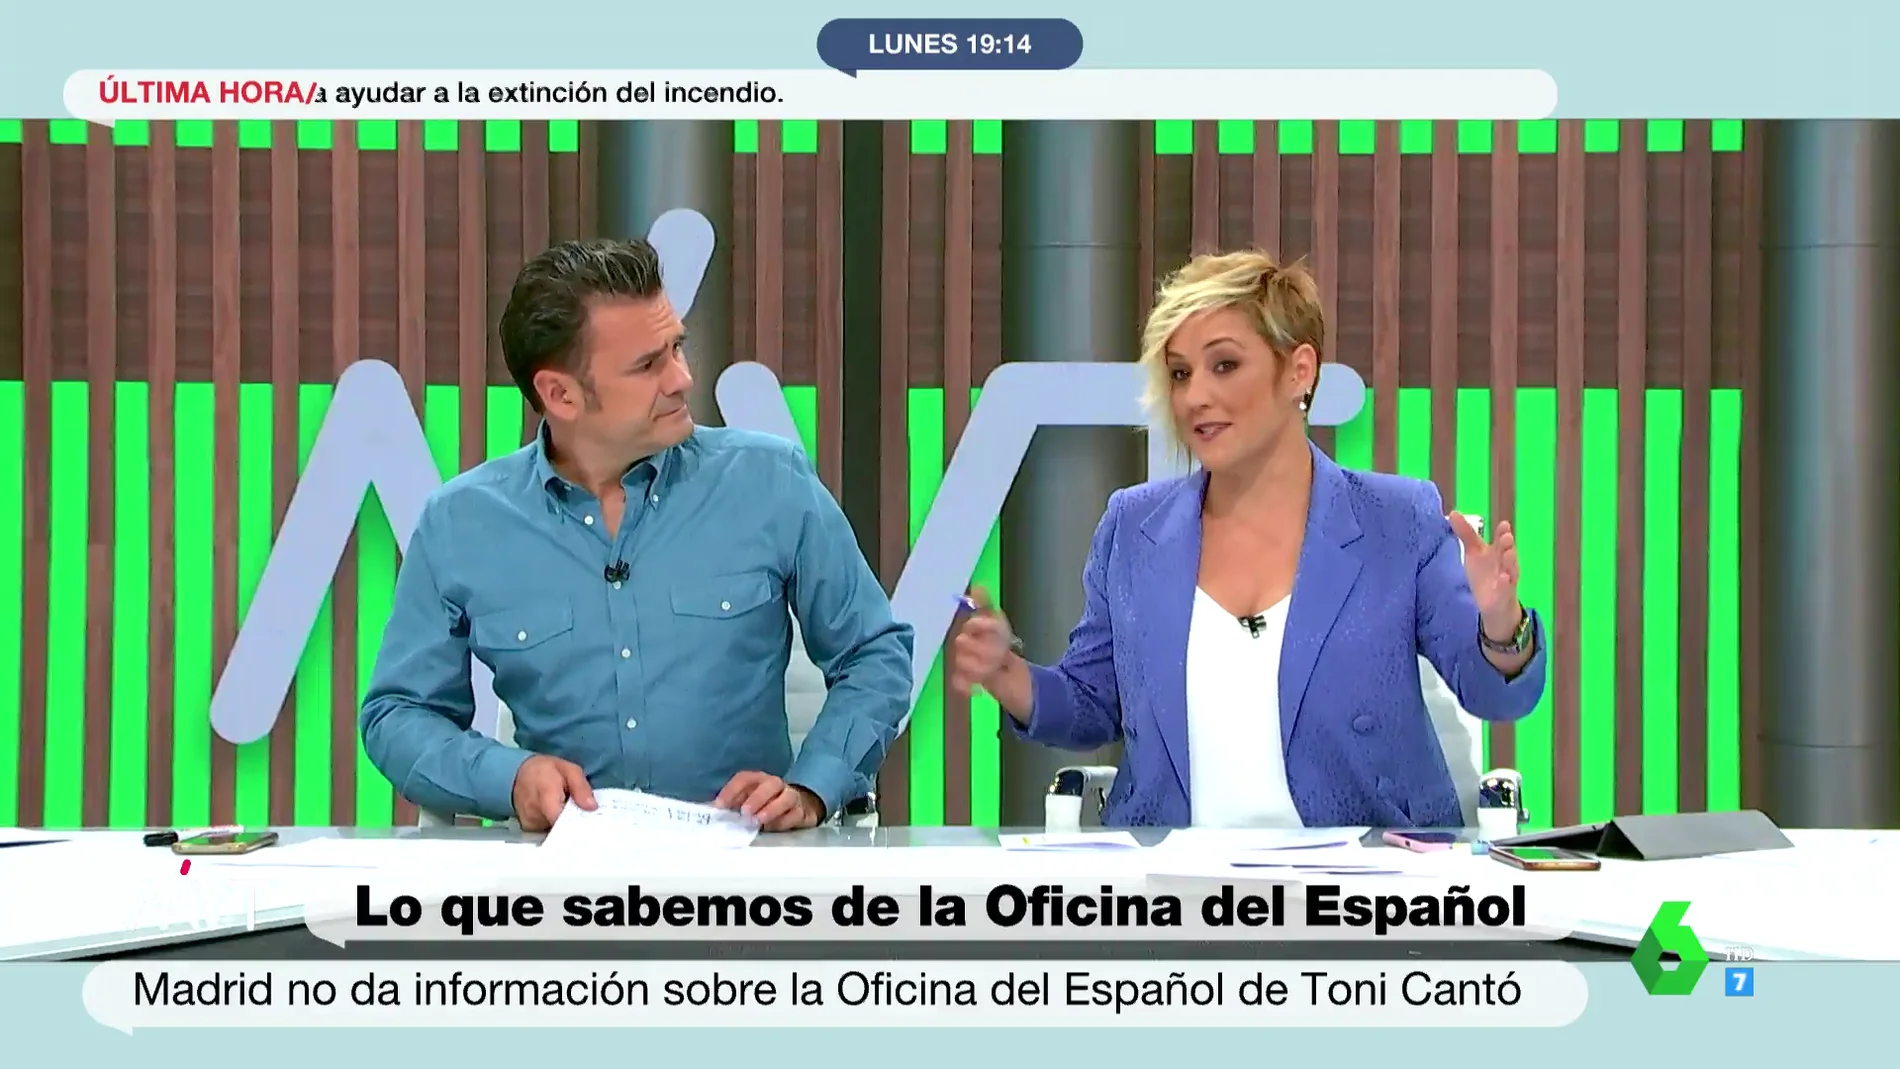 La reflexión de Cristina Pardo sobre la Oficina del Español: "Parece que se querían quitar de encima a Toni Cantó"